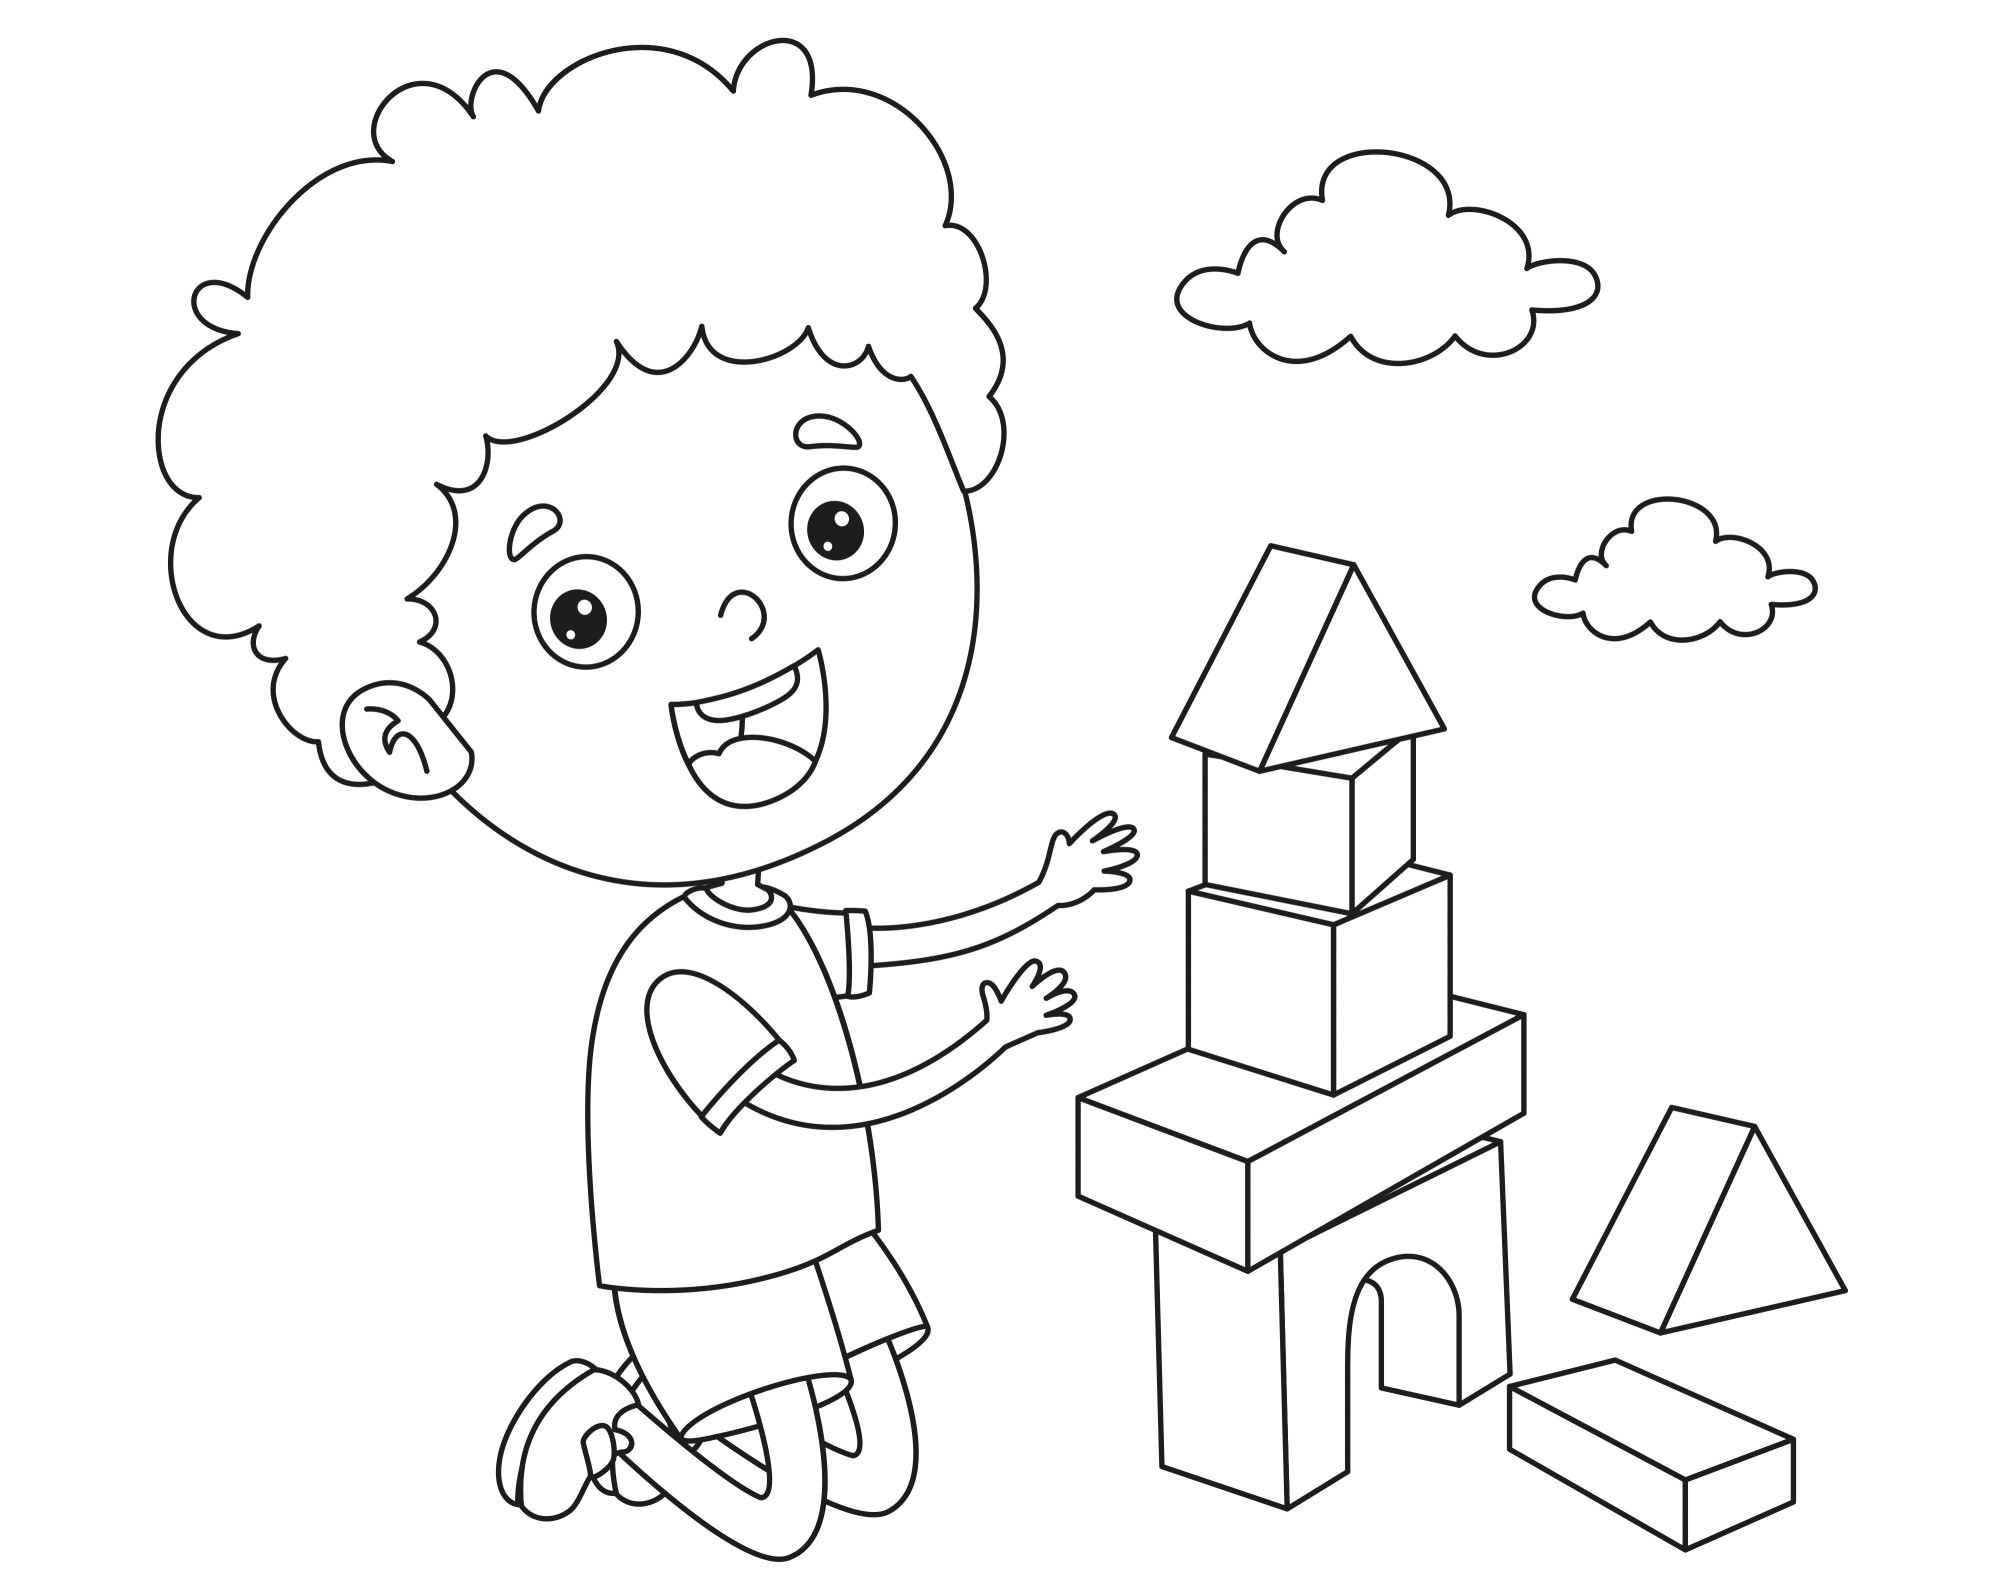 Раскраска для детей: малыш играет в конструктор с кубиками